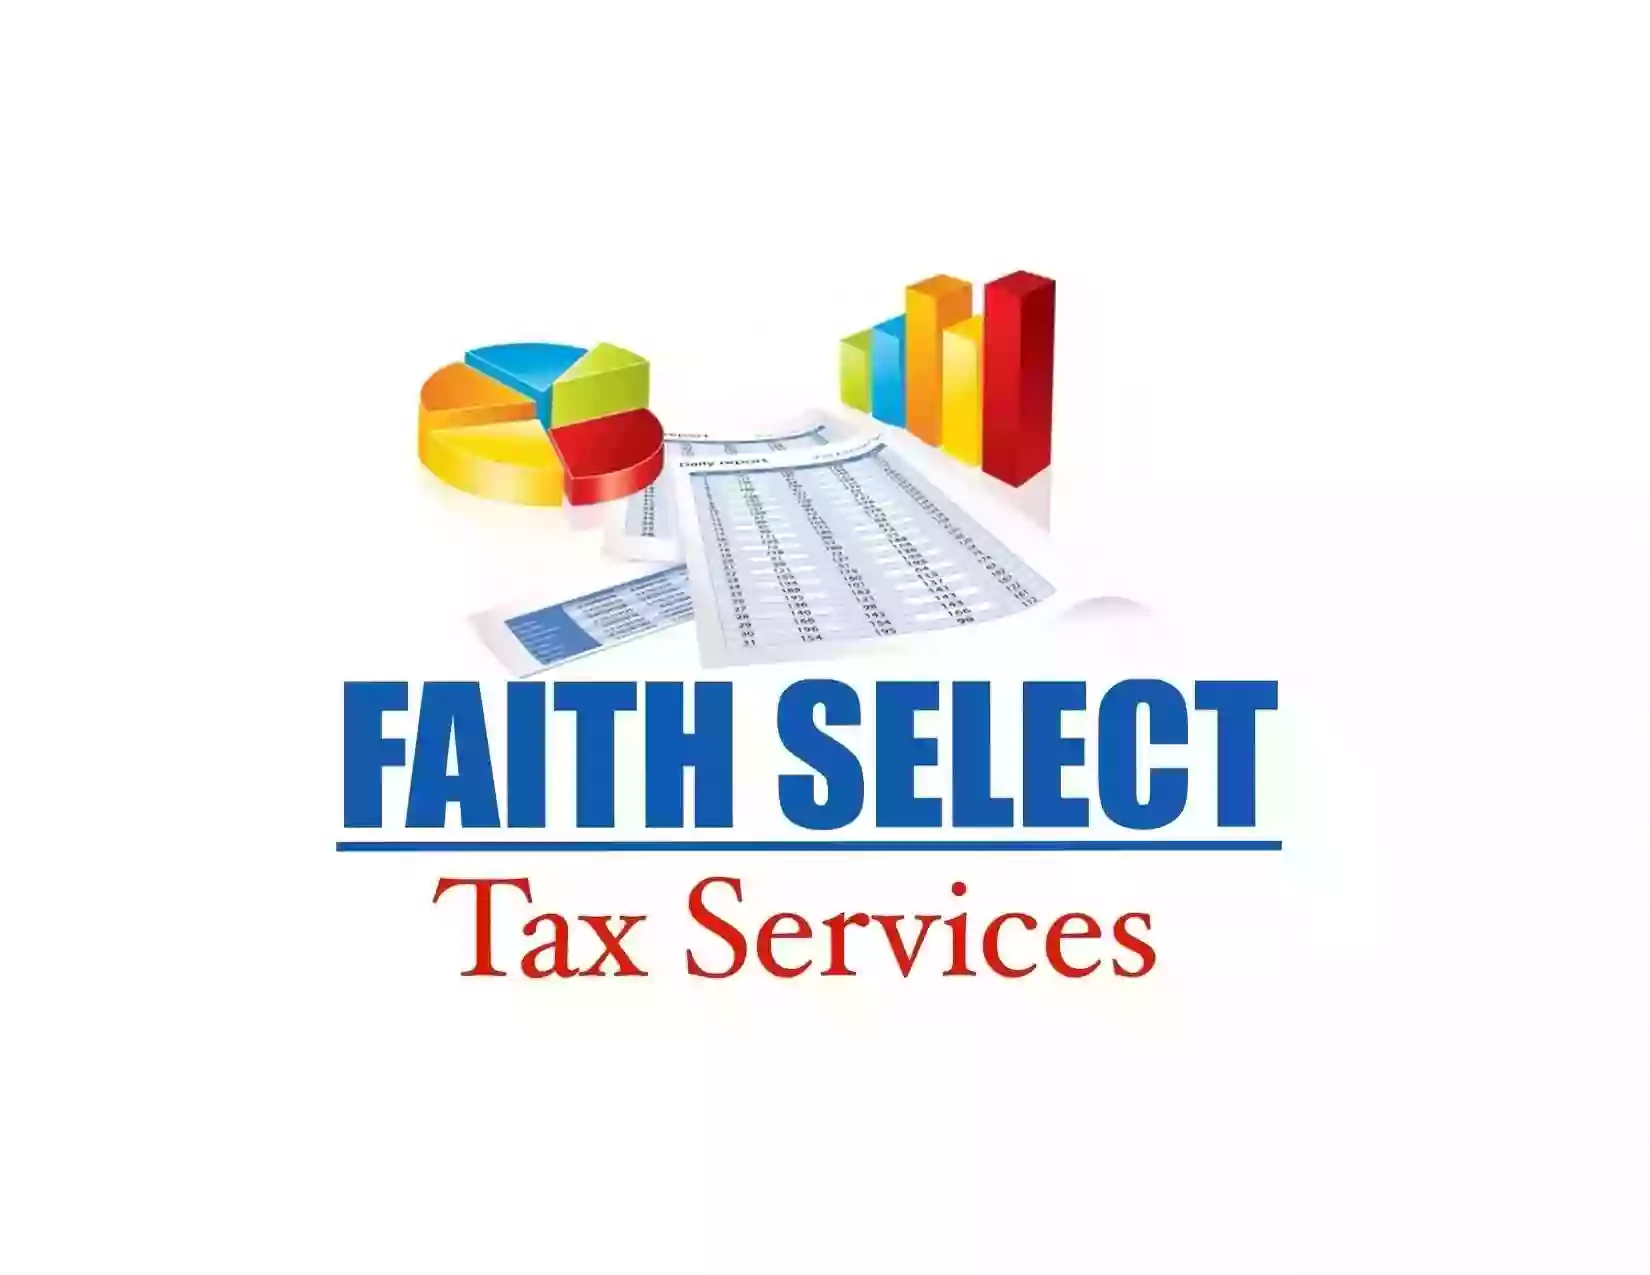 FAITH SELECT TAX SERVICES